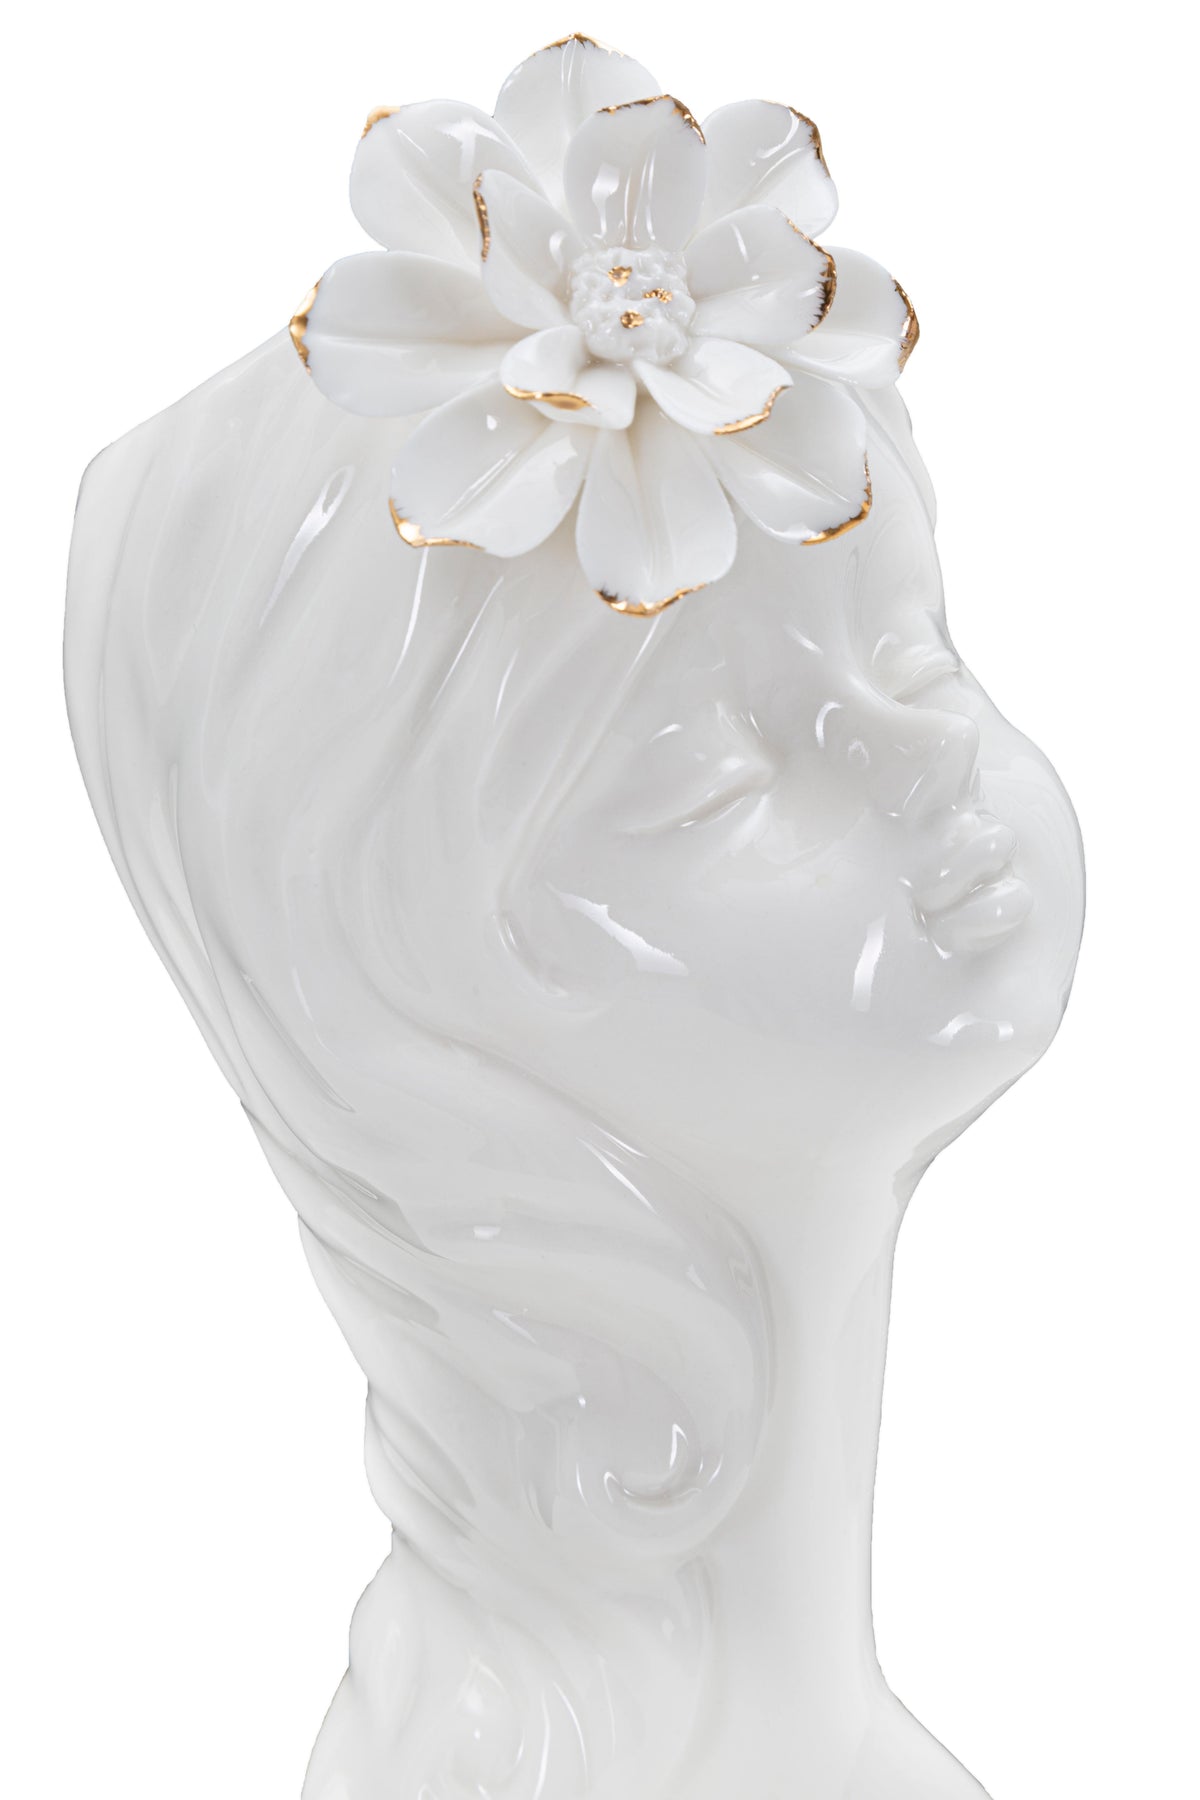 LADY A fehér porcelán váza